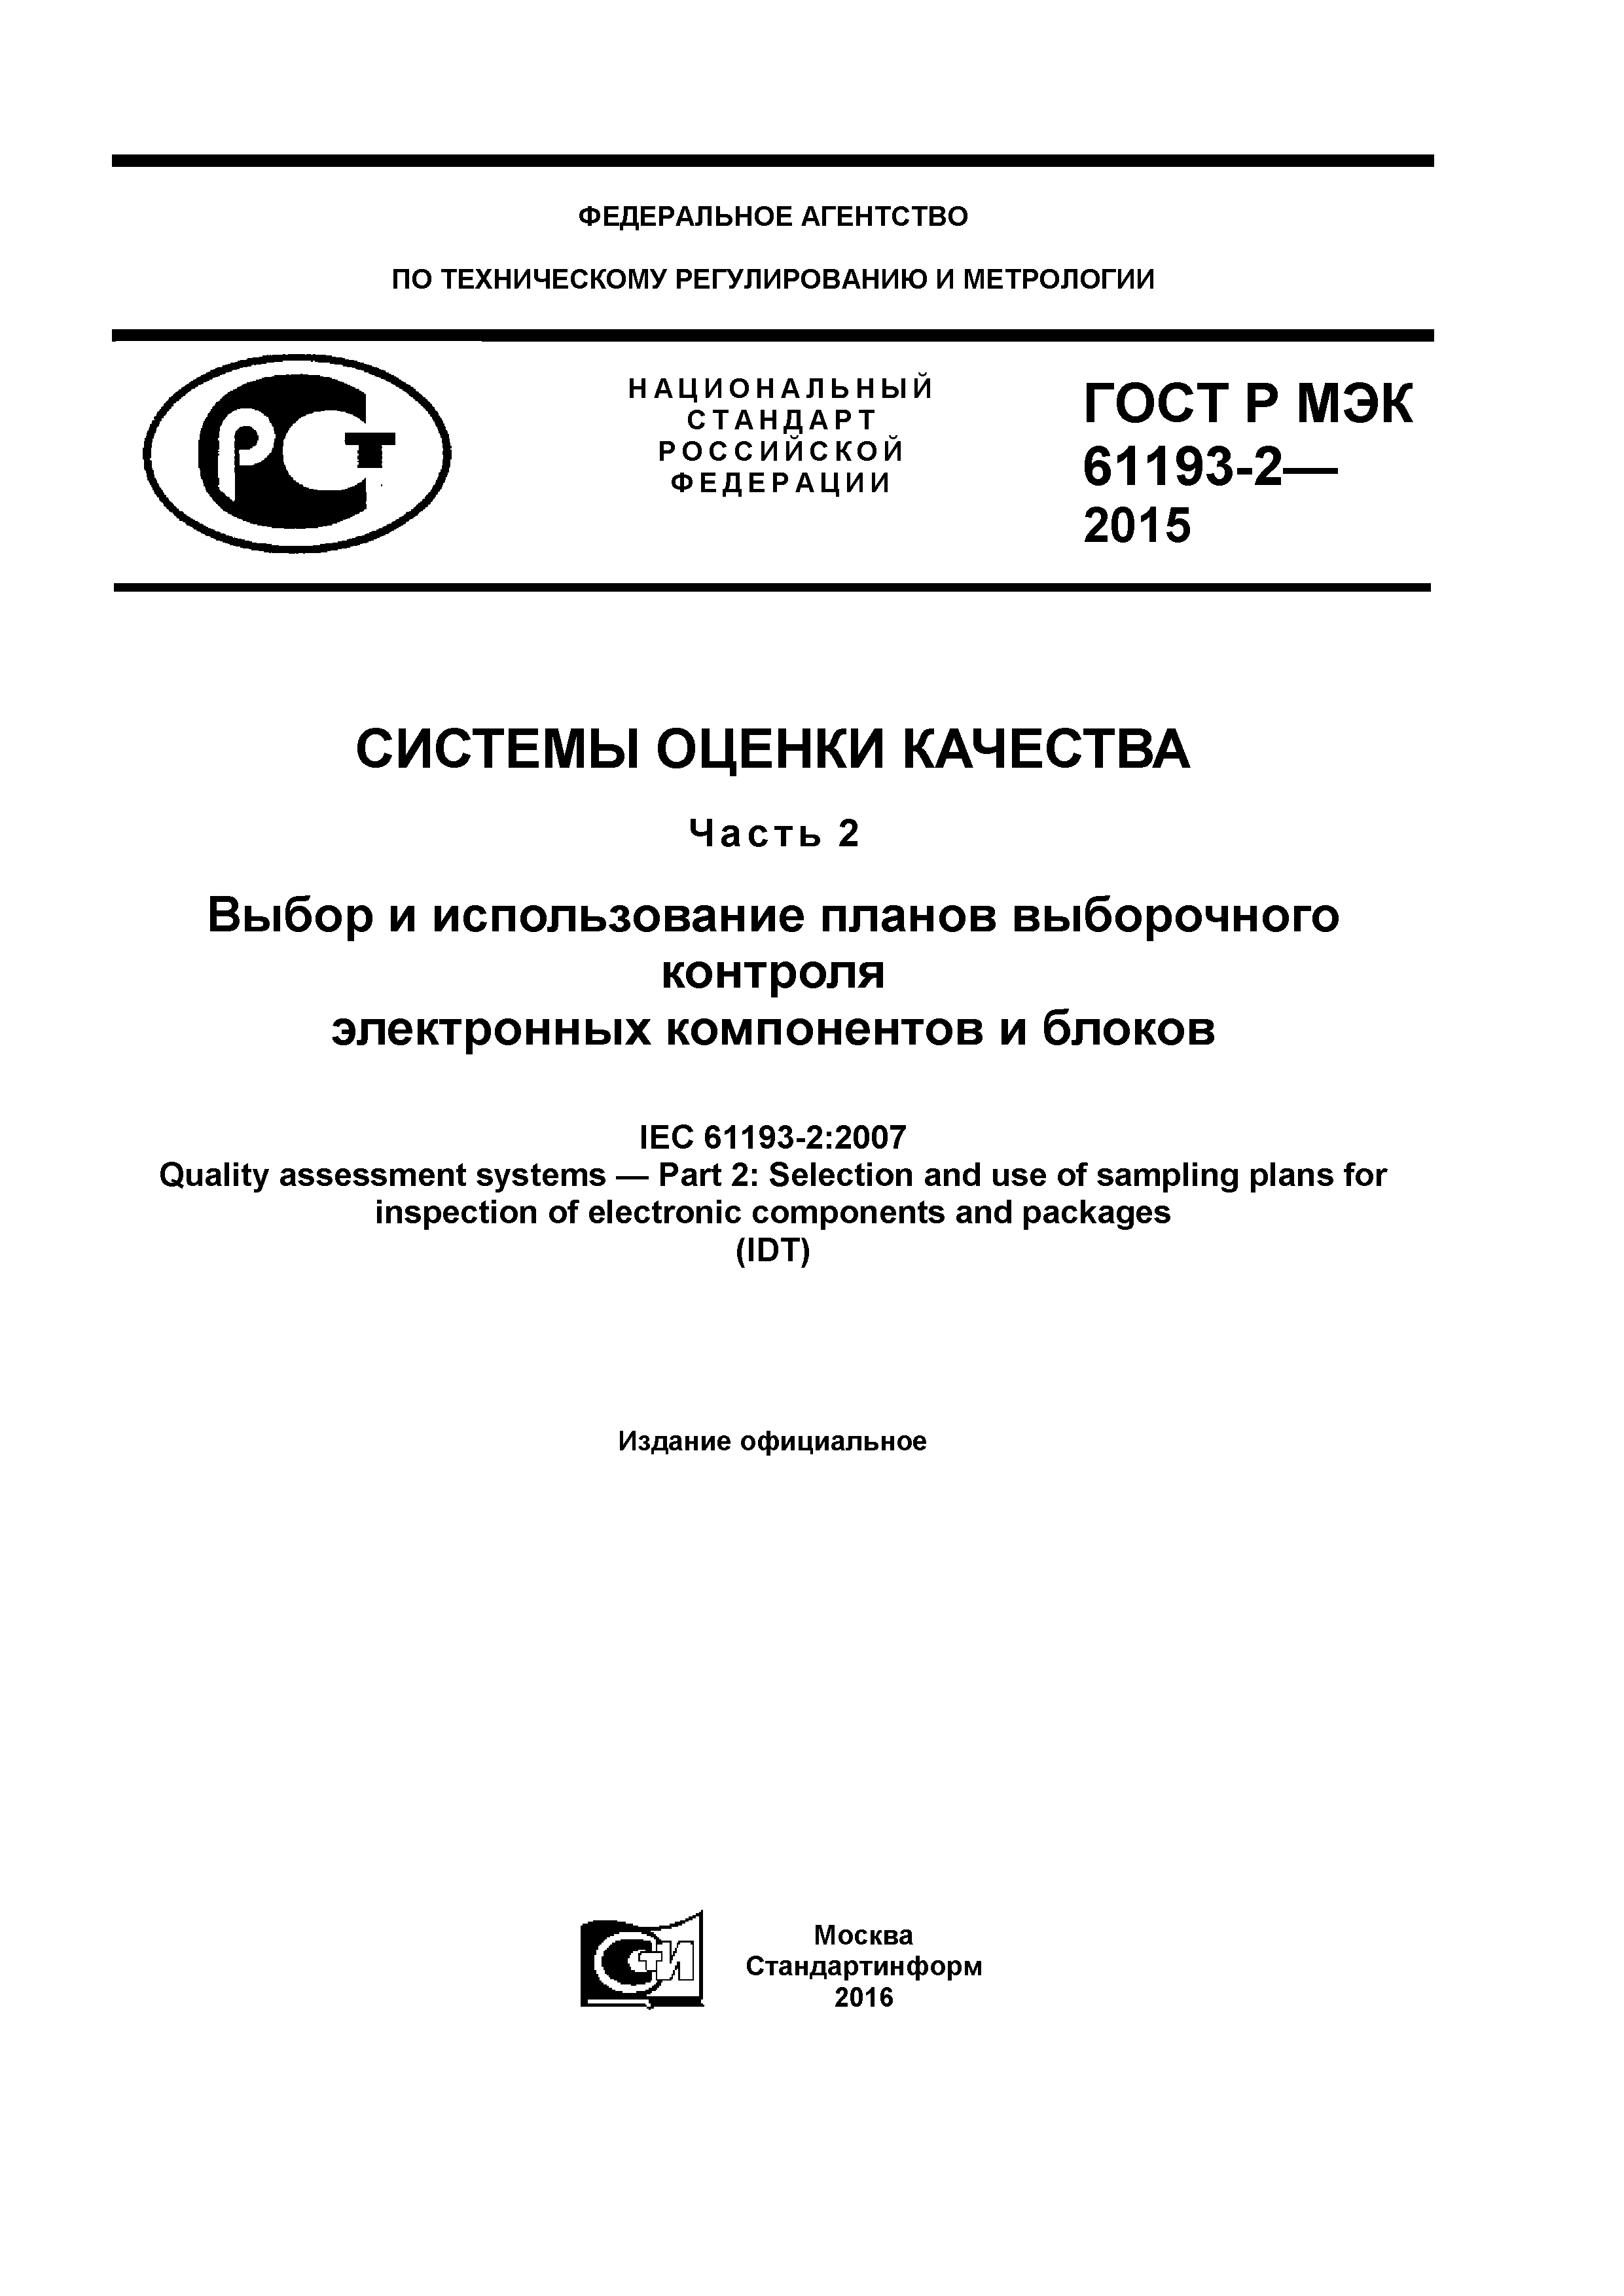 ГОСТ Р МЭК 61193-2-2015